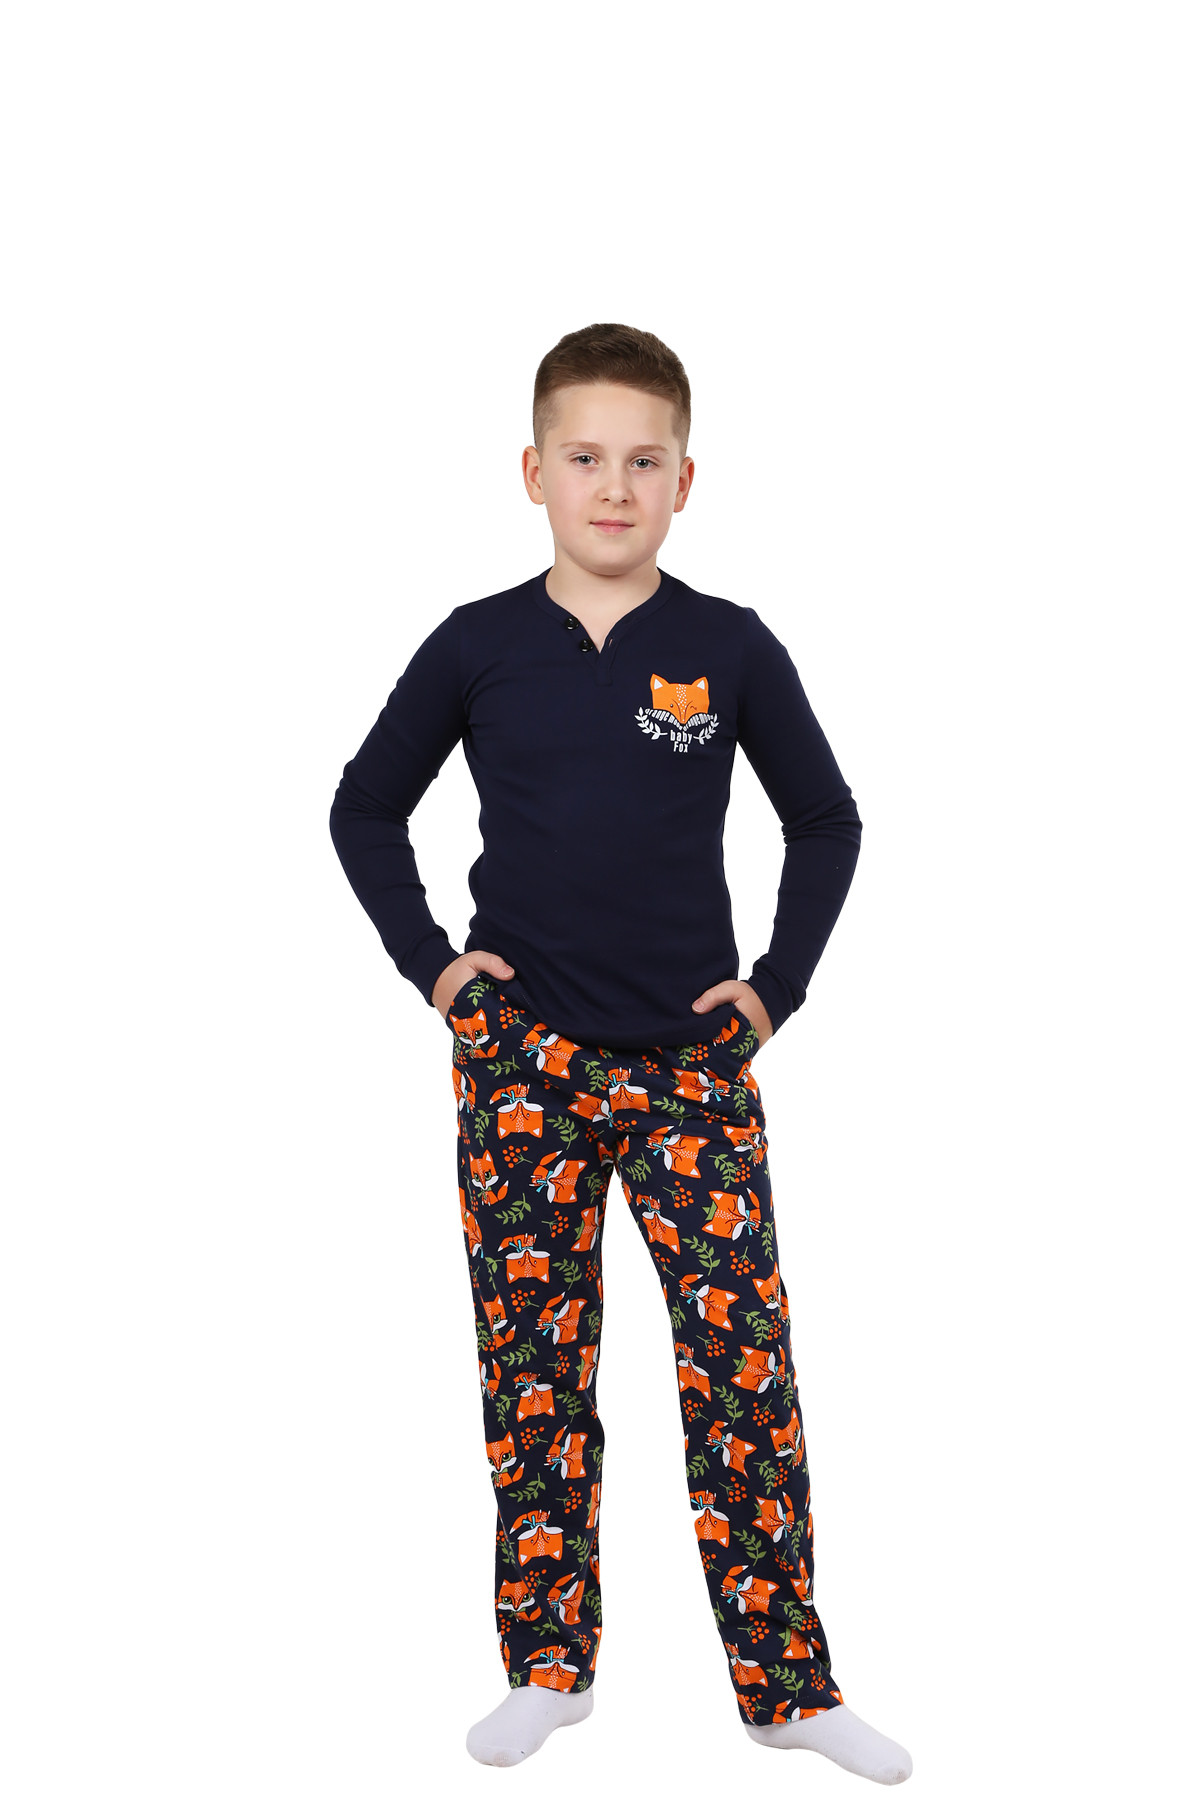 Детская пижама Лисенок Цвет: Темно-Синий (12 лет), размер 12 лет